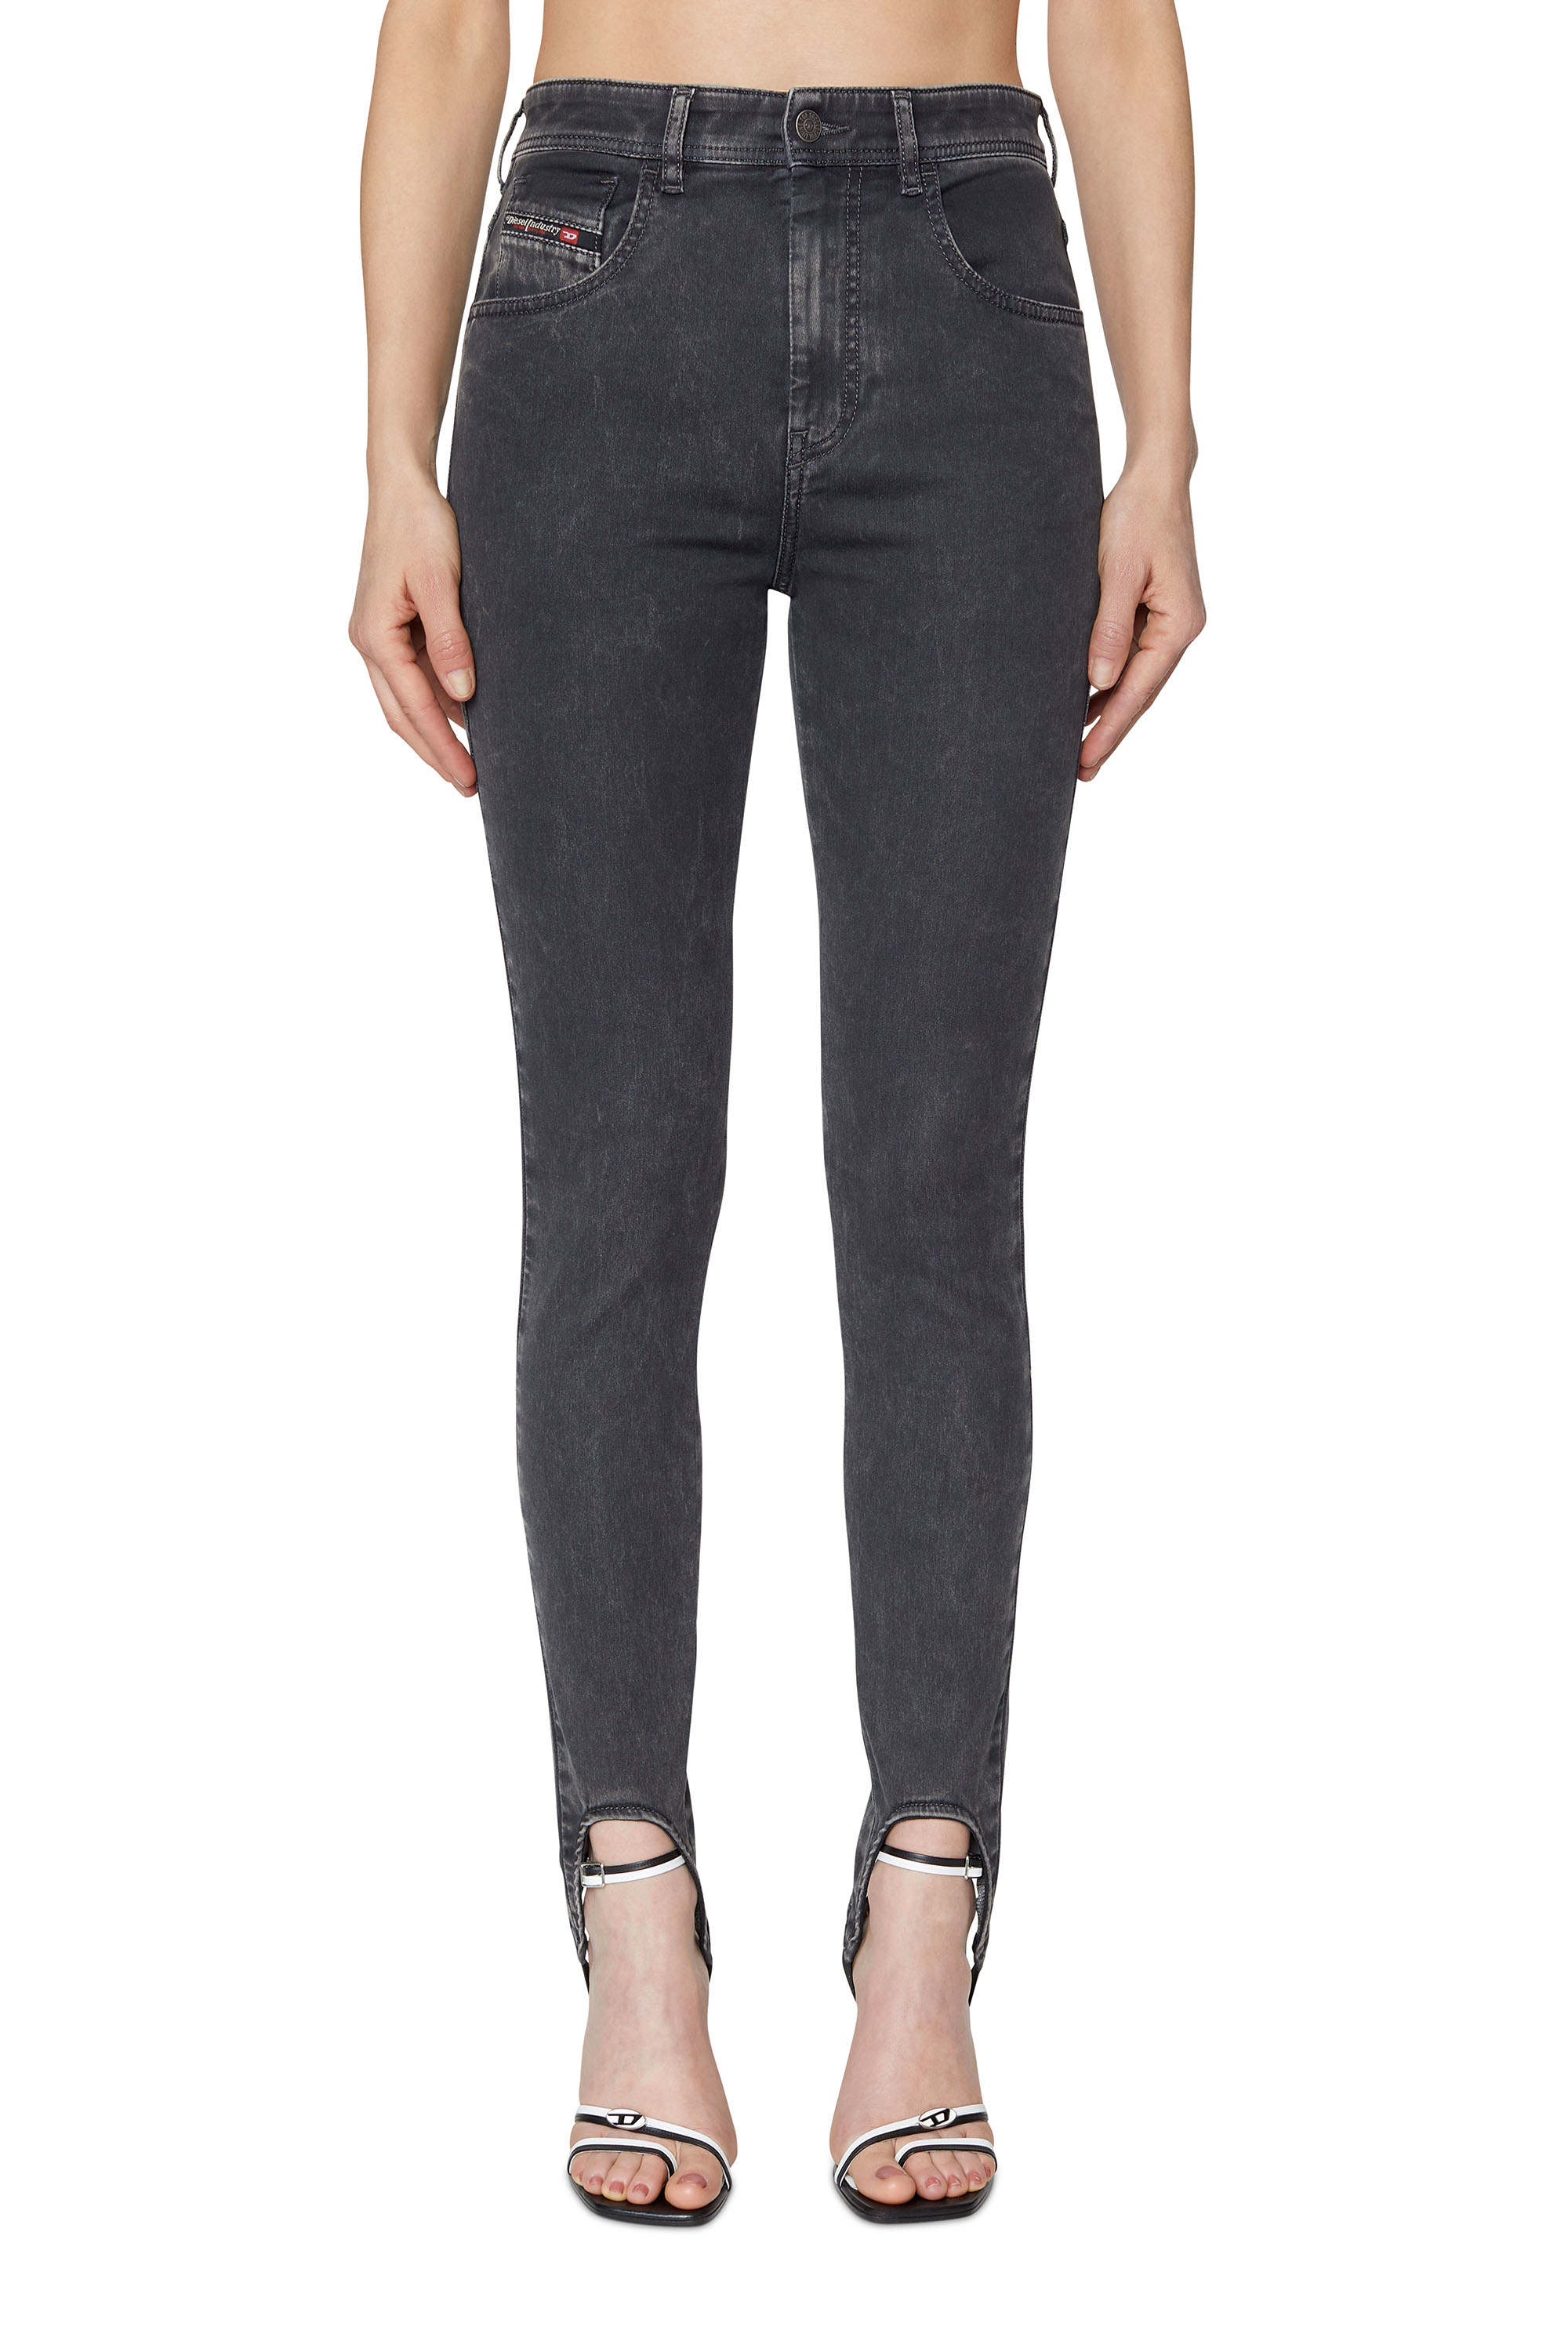 SLANDY JoggJeans® 069ZM Super skinny, Black/Dark grey - Jeans